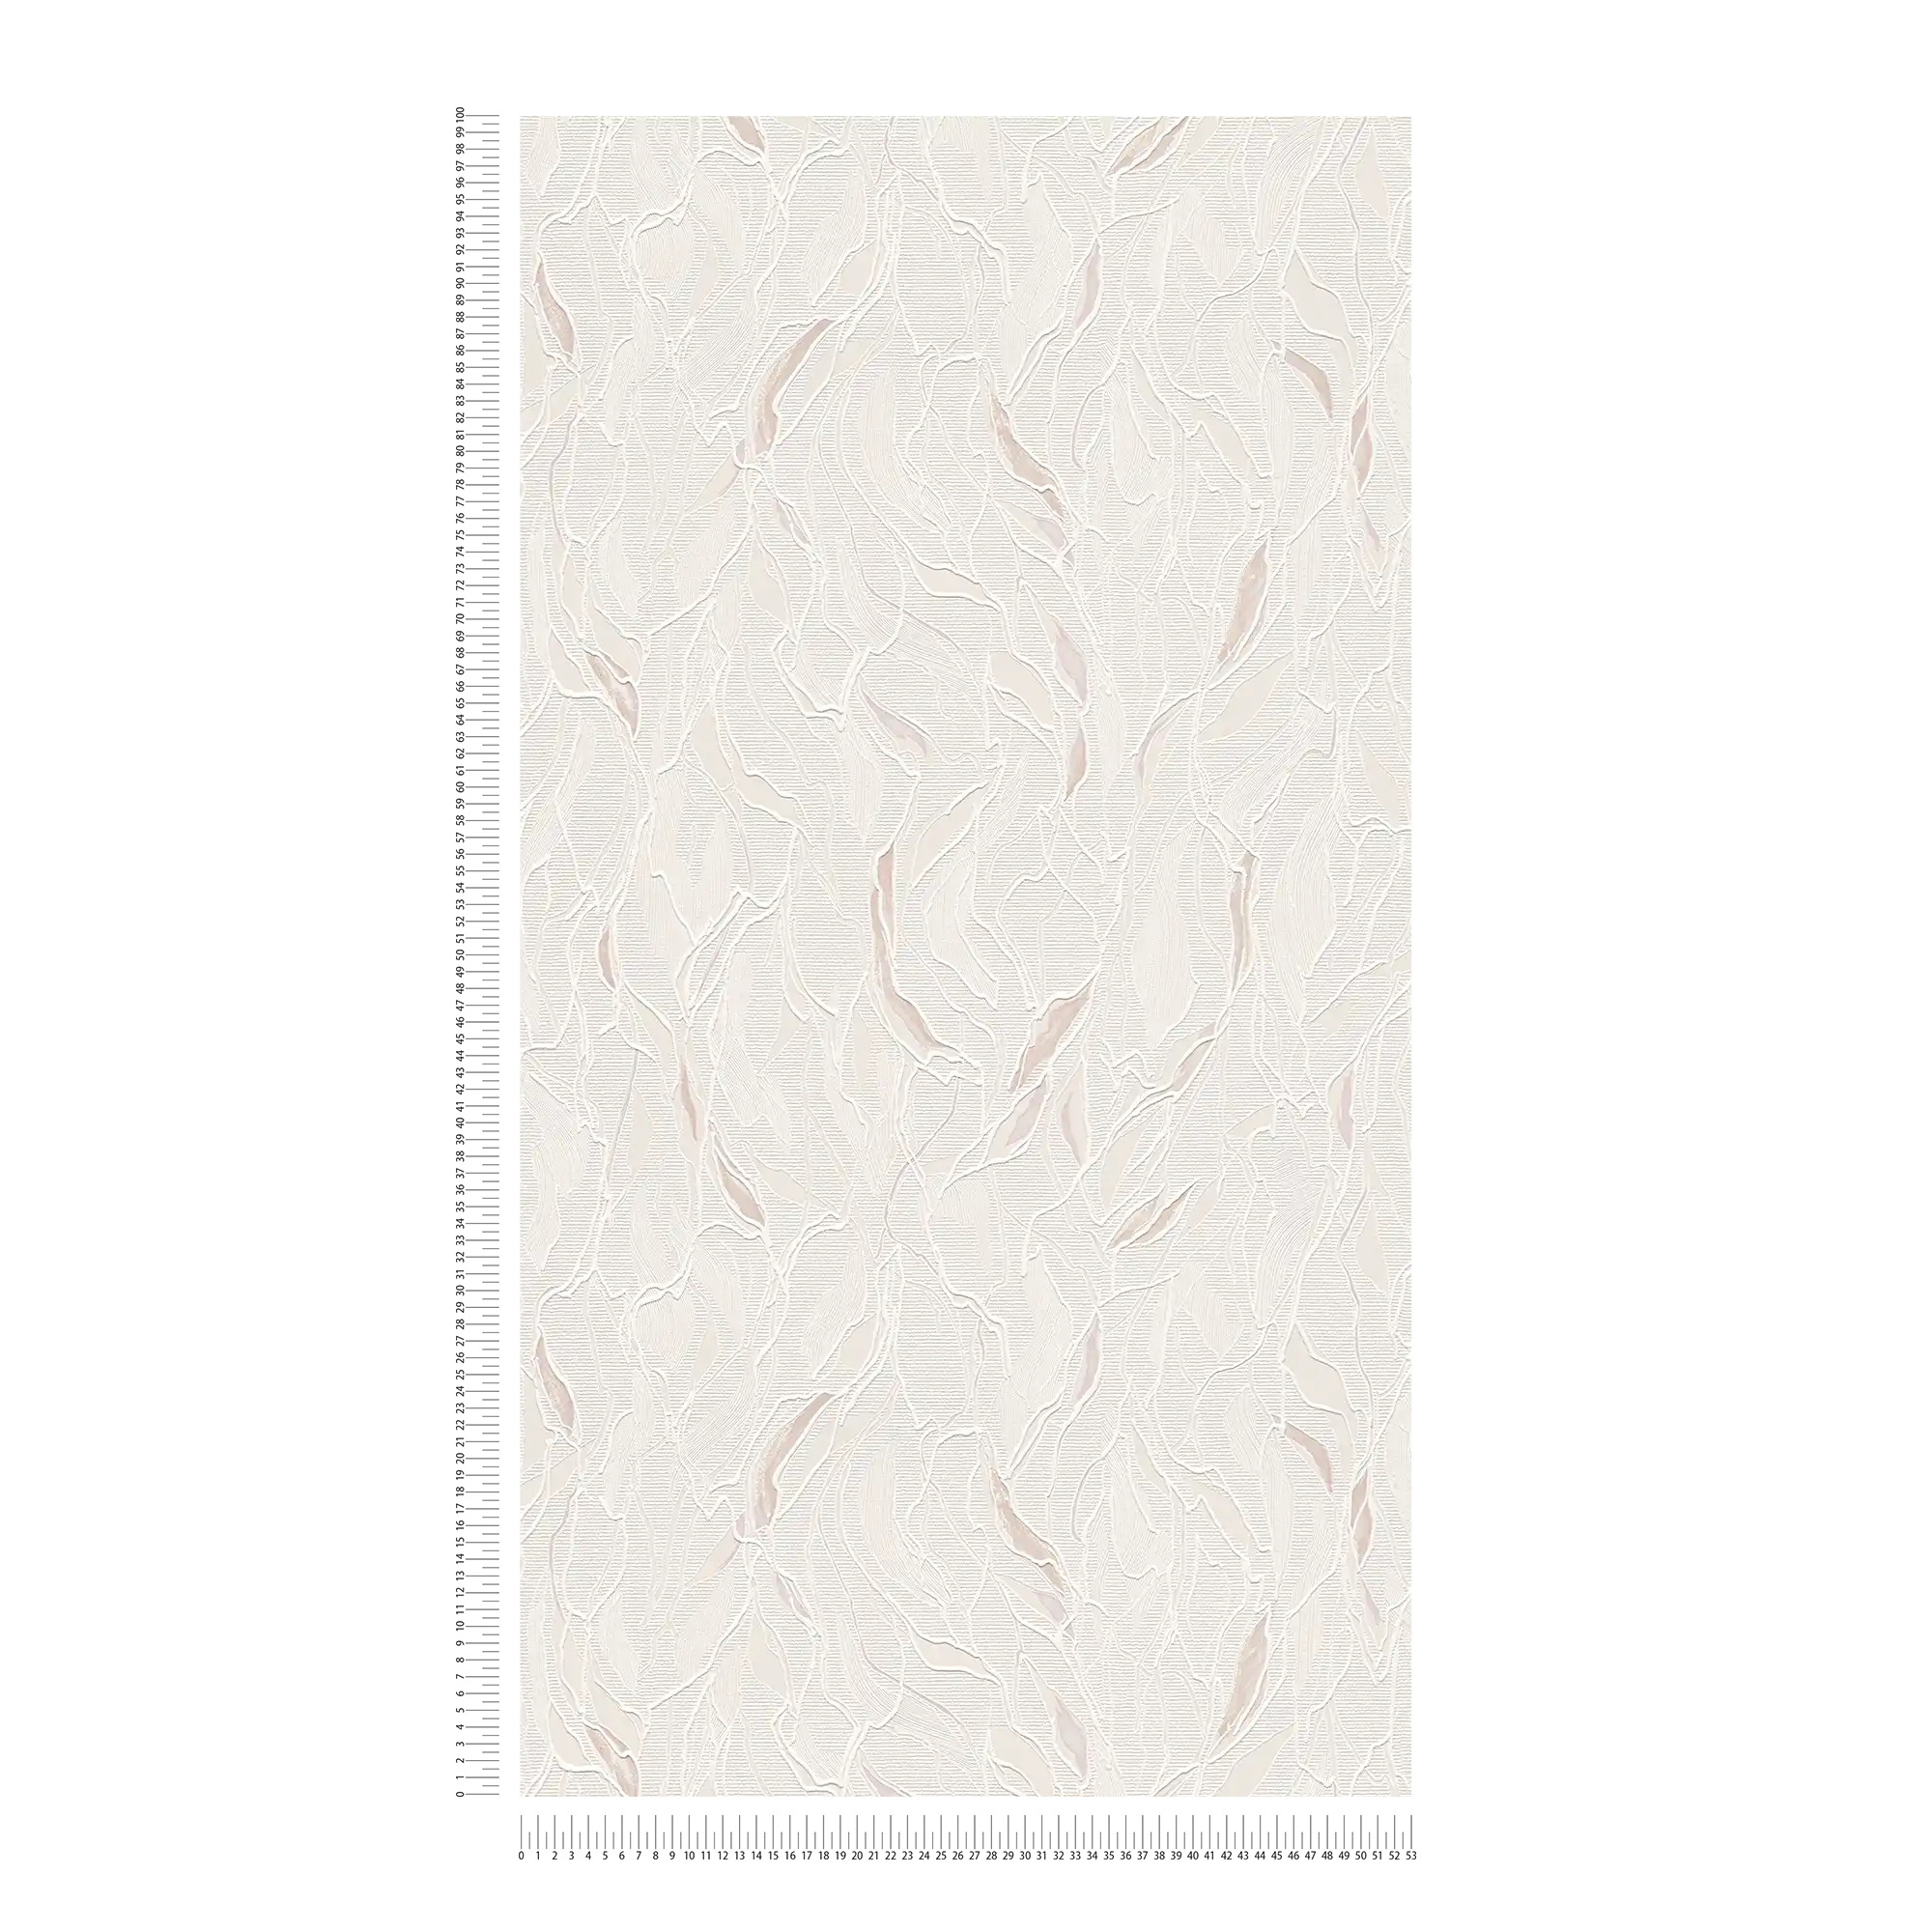             Papel pintado abstracto con relieve y estructura de espuma - metálico, blanco
        